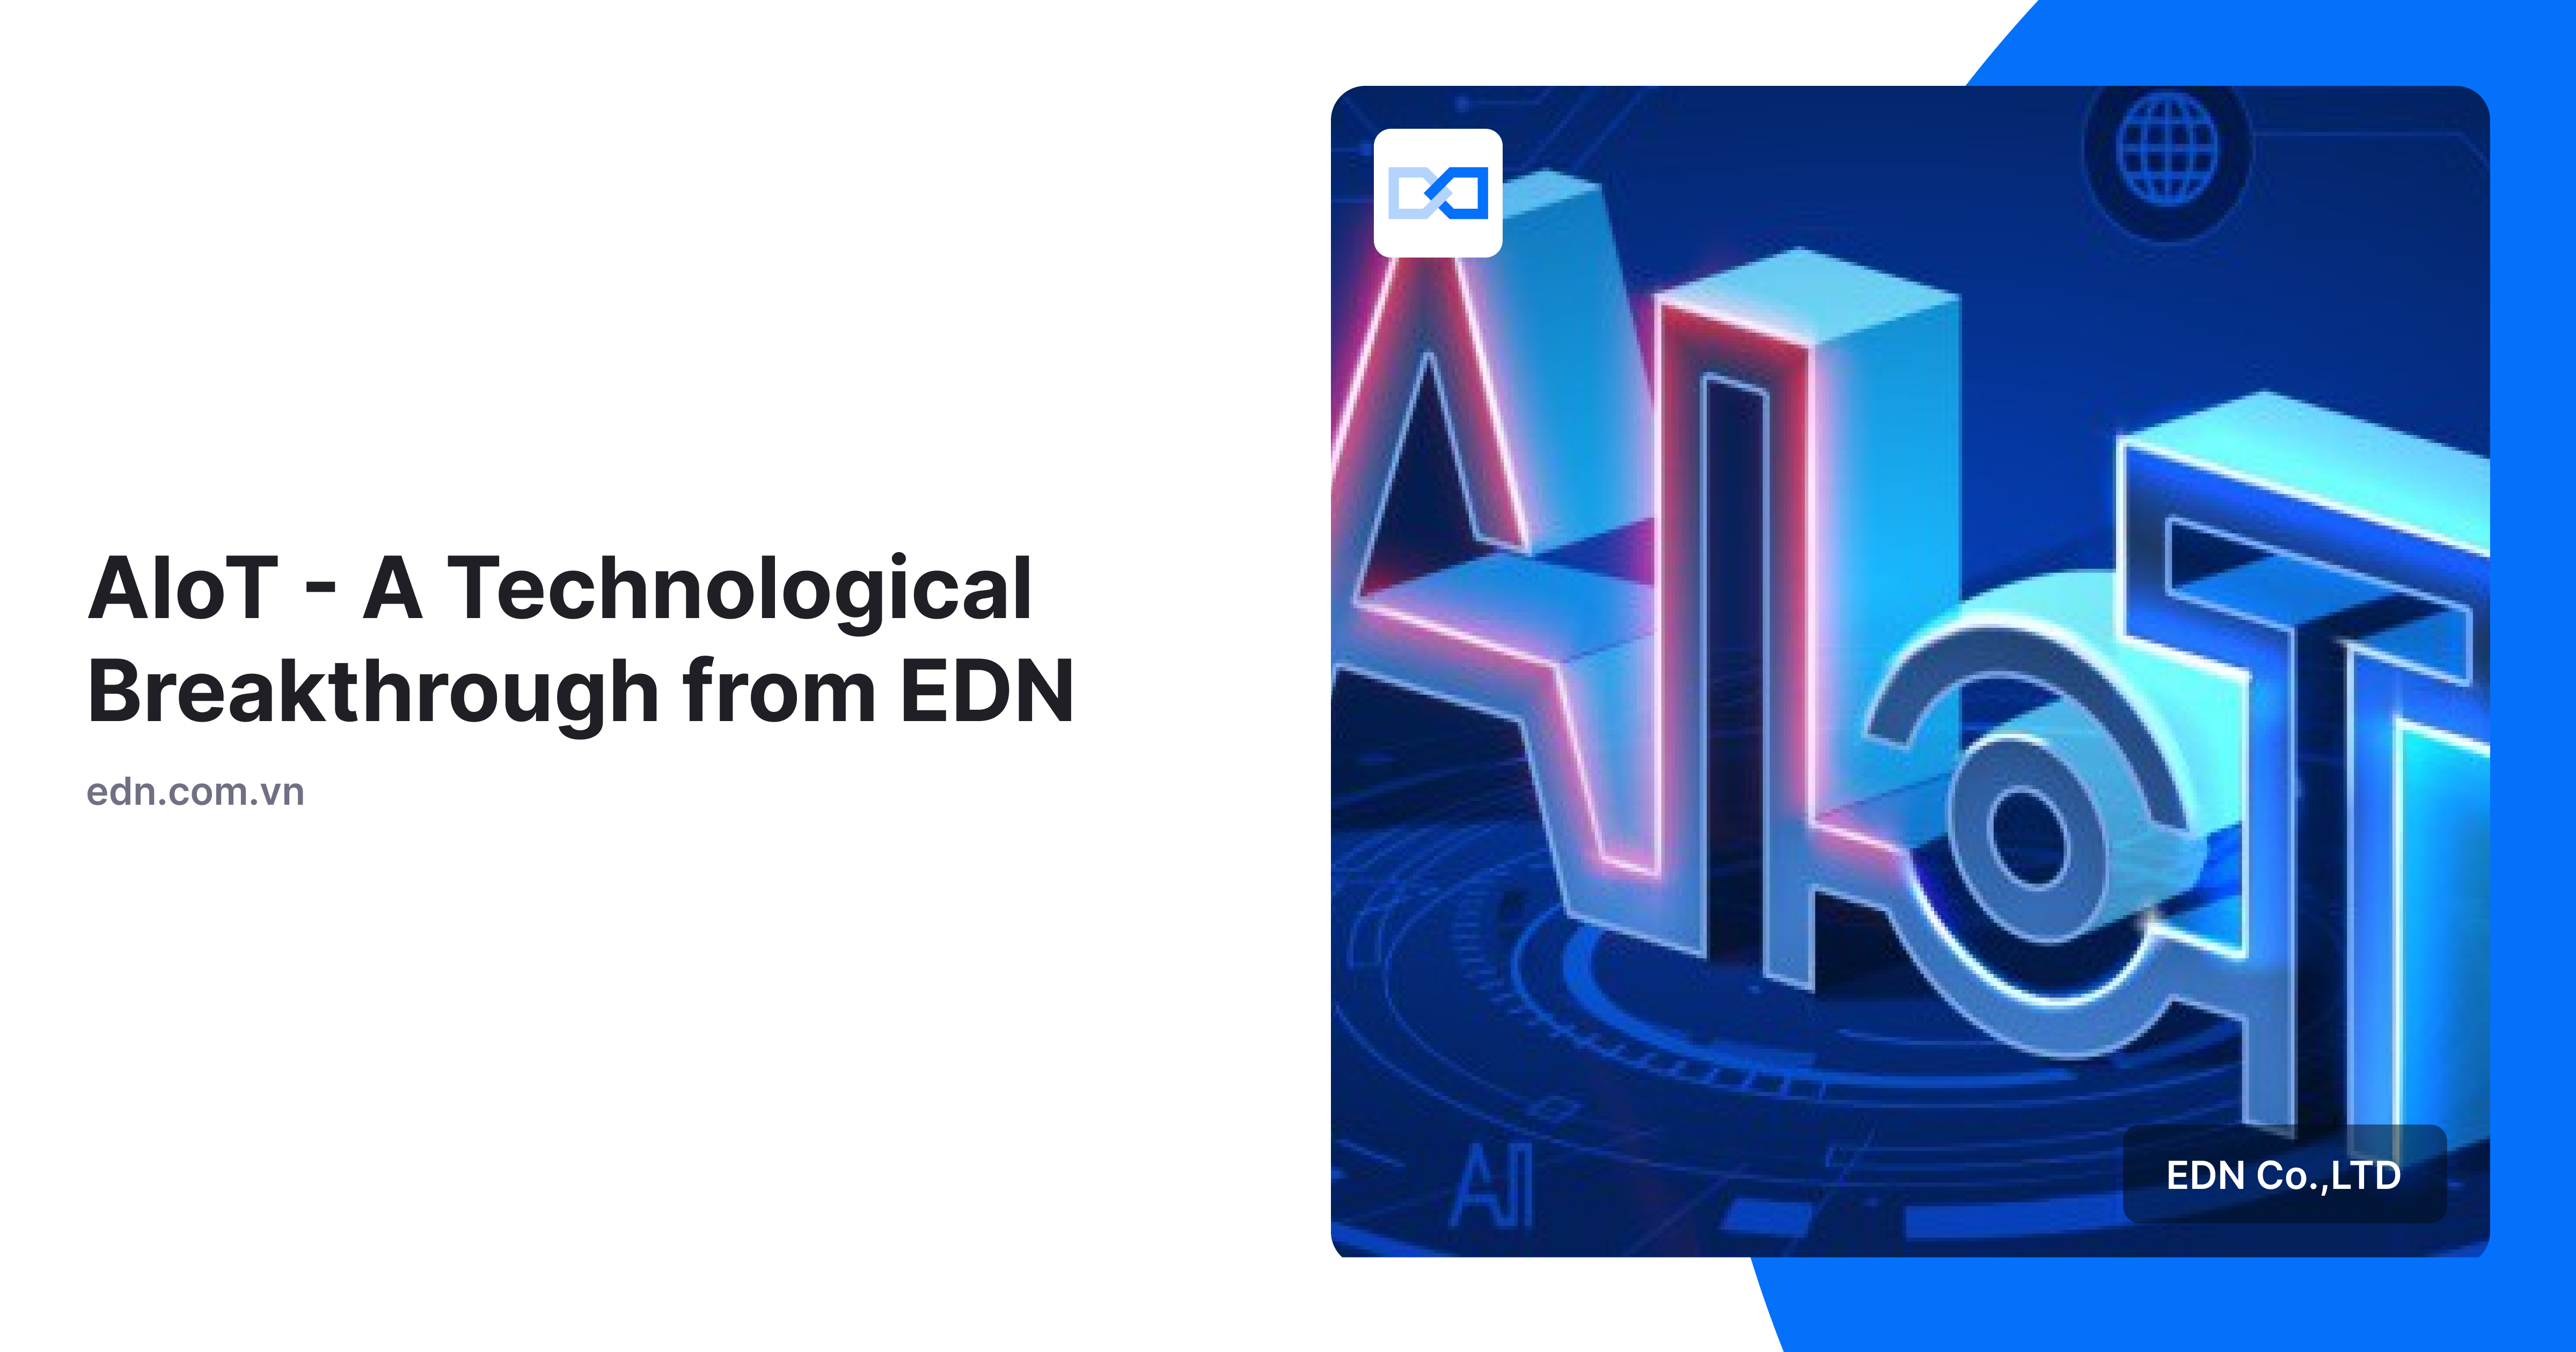 AIoT bước đột phá công nghệ đến từ EDN